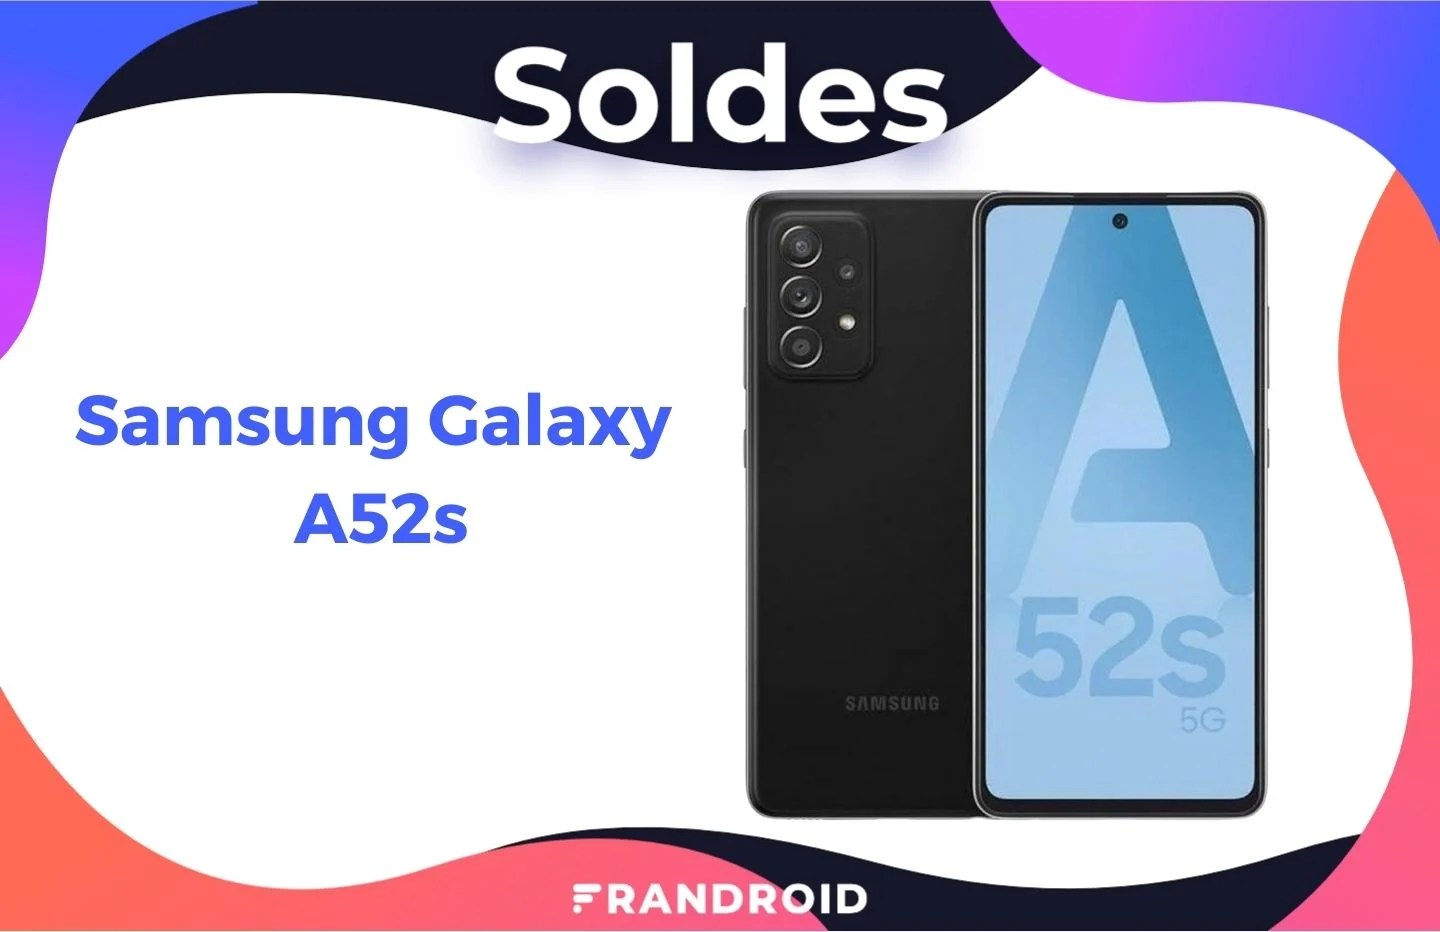 Le Samsung Galaxy A52s est à un très bon prix grâce à ce code promo